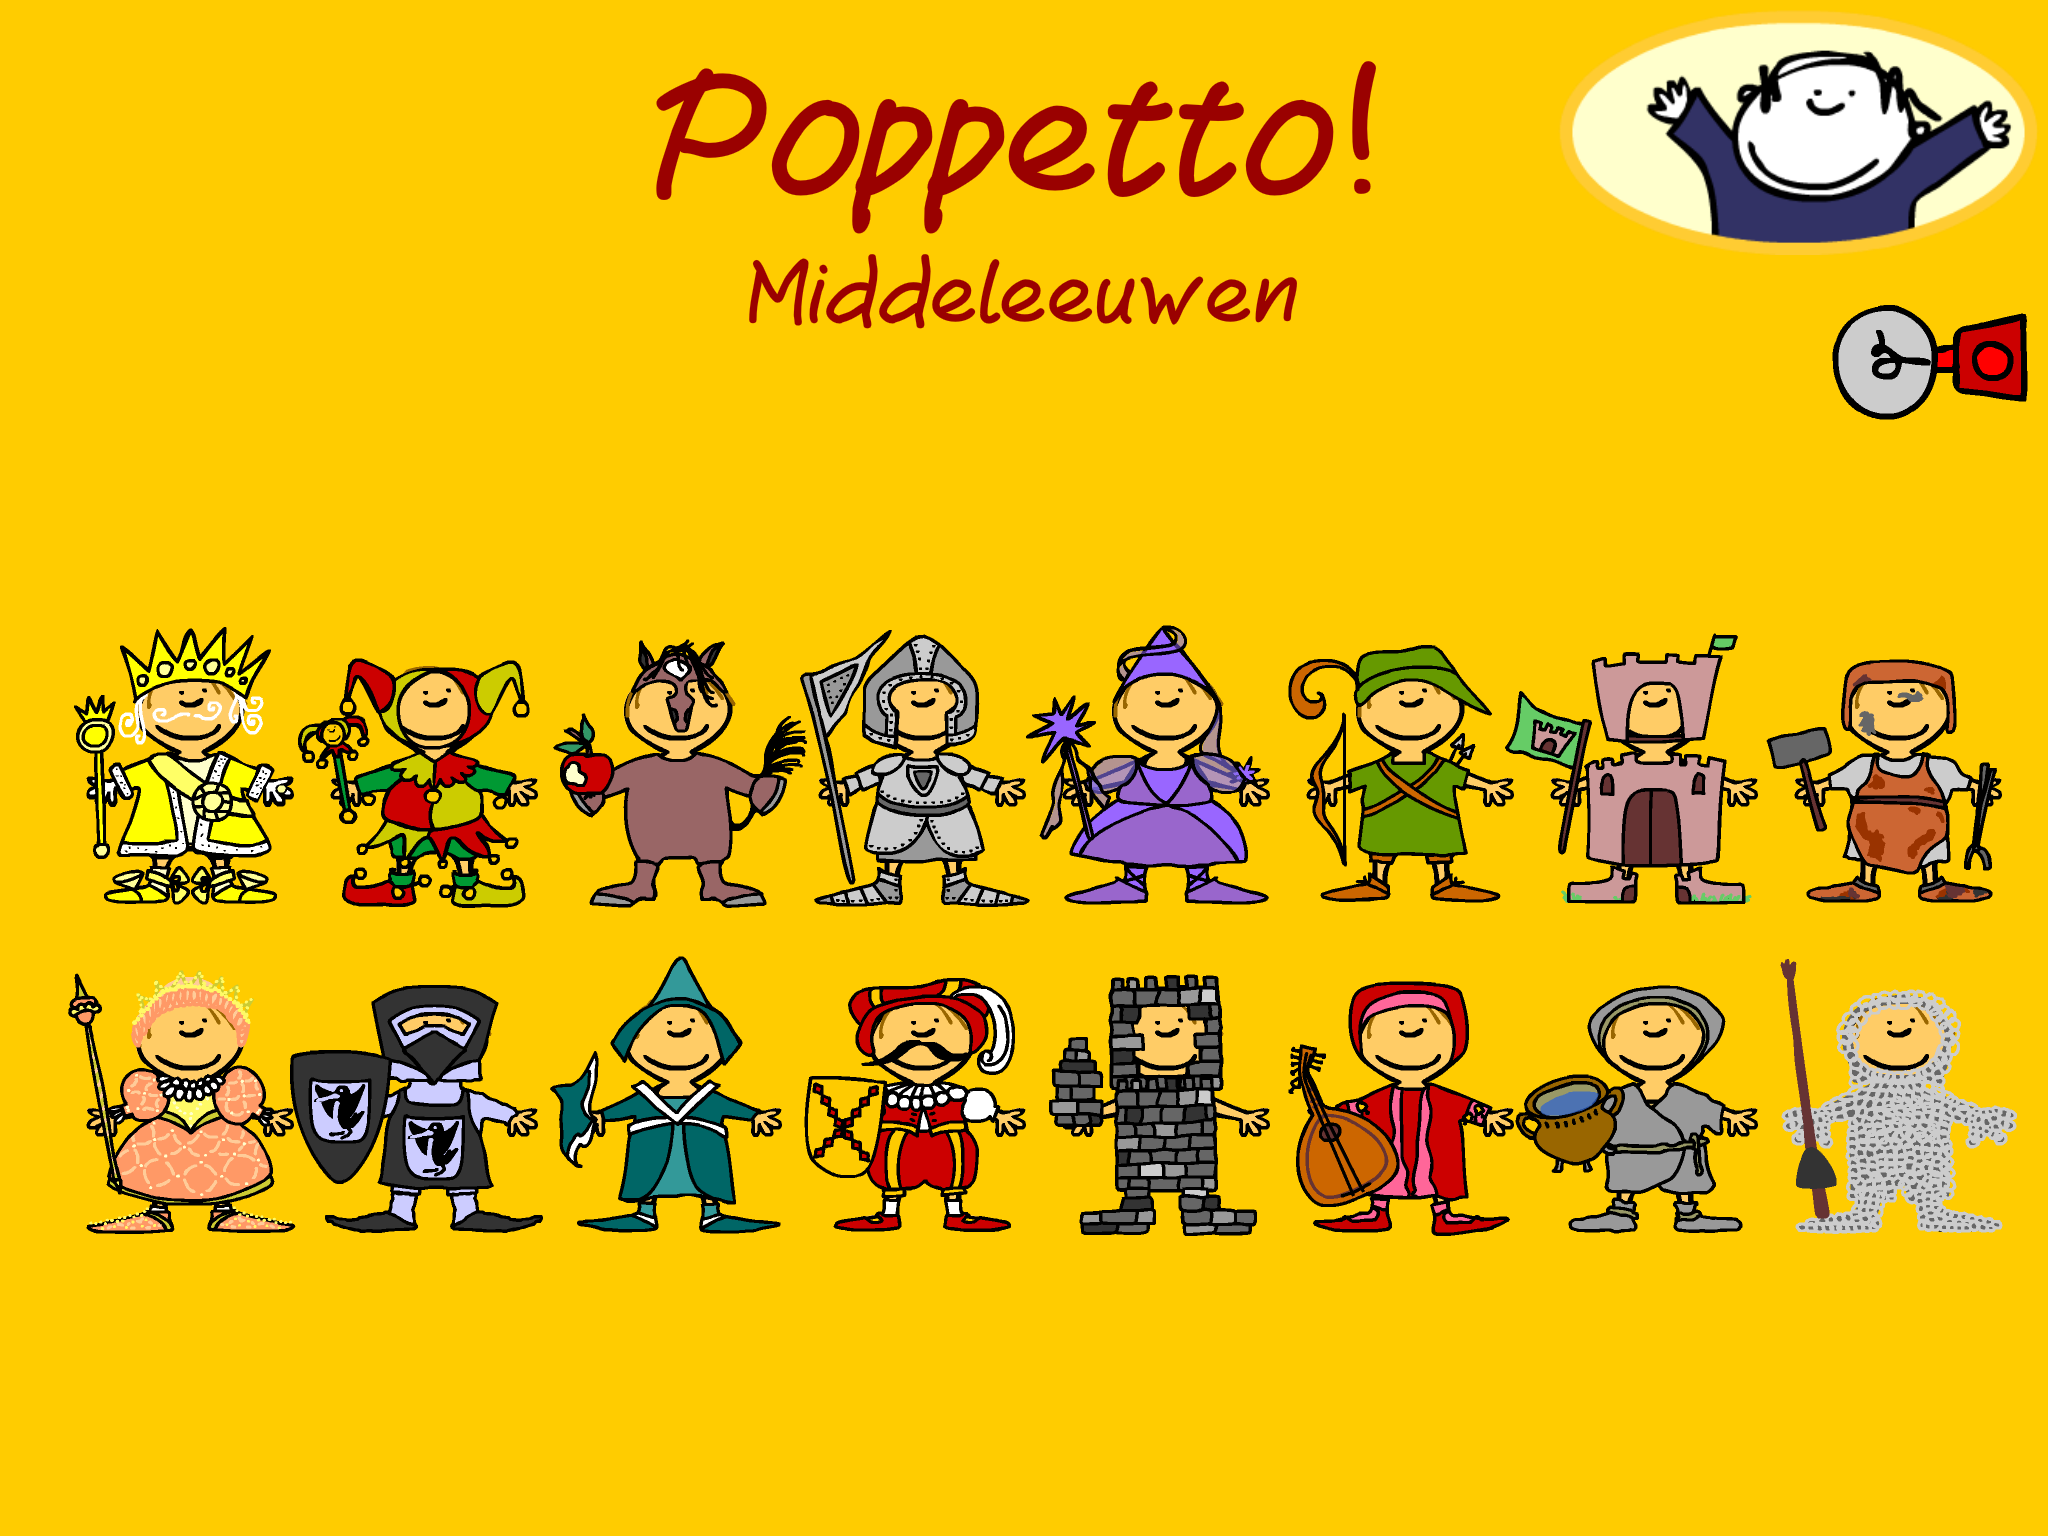 Poppetto Middeleeuwen